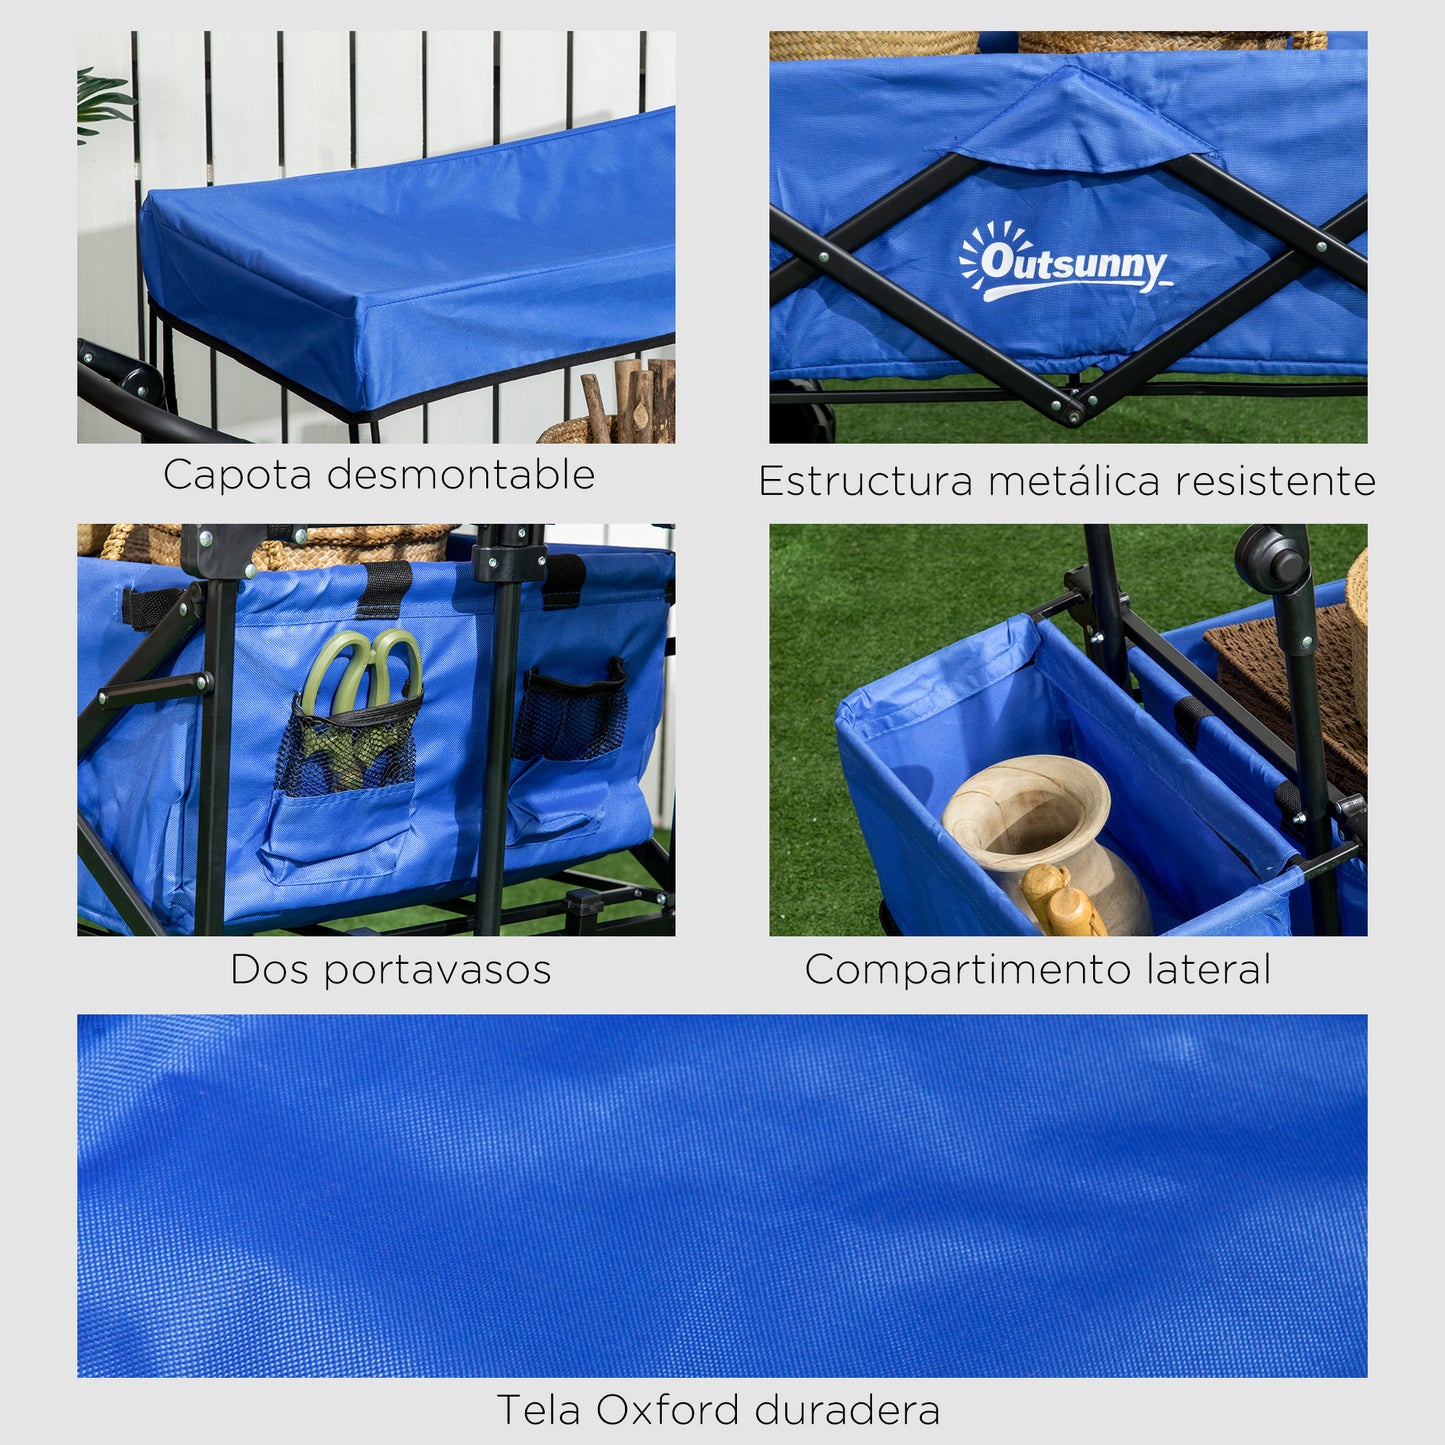 Outsunny Carro Transporte Plegable de Playa Jardín Camping Viaje con Toldo y Manillar Cuatro Ruedas Regulable en Altura de 117x55x98 cm Color Azul Carga Máx. 68 kg